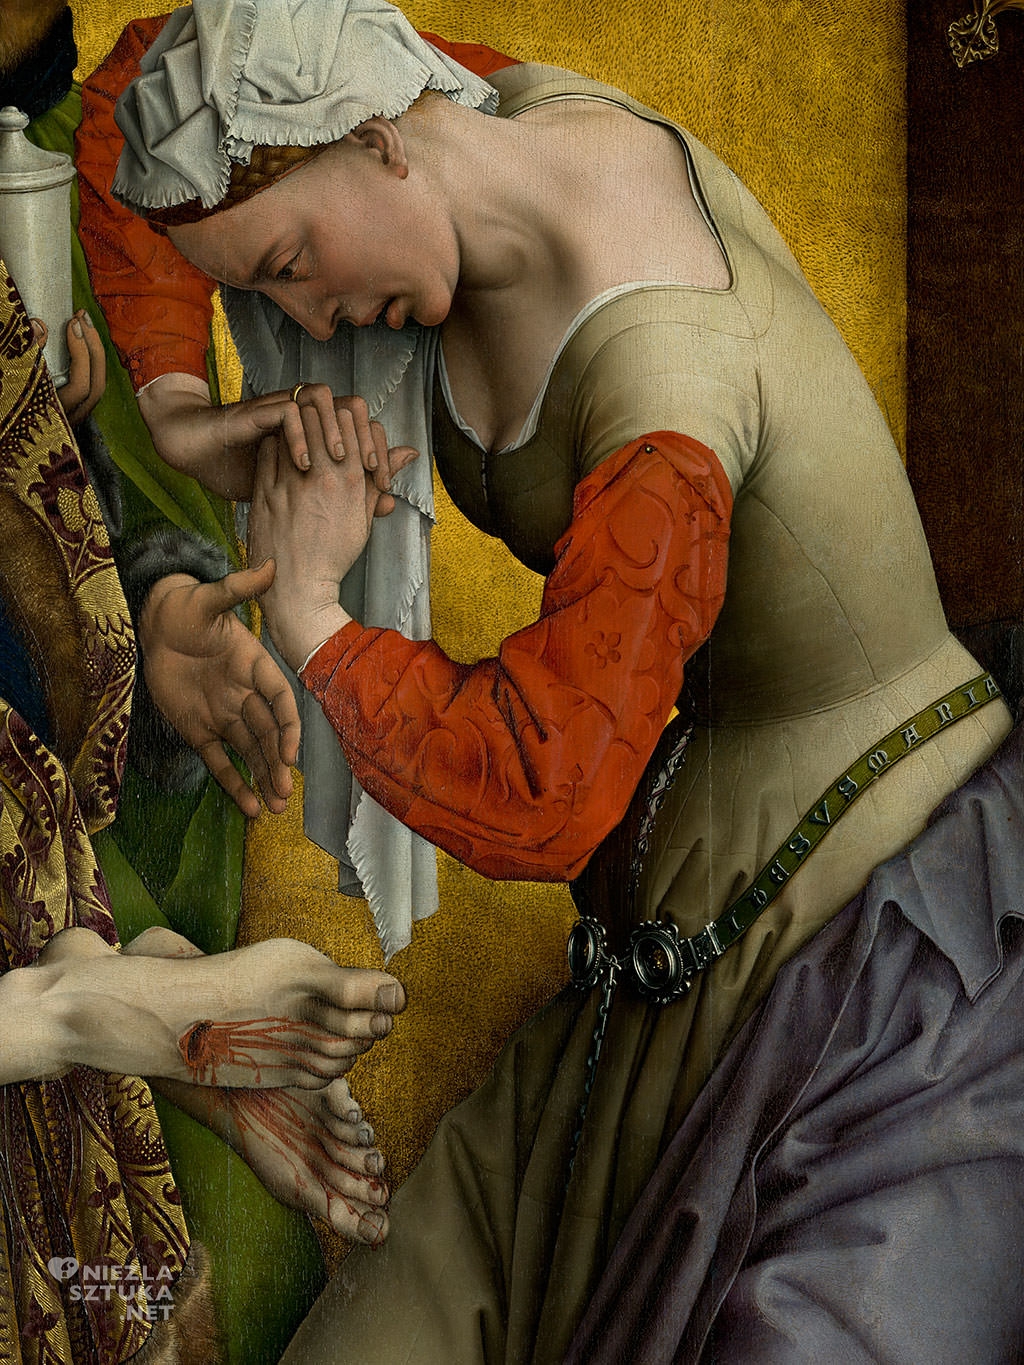 Rogier van der Weyden, Zdjęcie z krzyża, ok. 1435/43 olej, tempera, drewno, Museo Nacional del Prado, Madryt, malarstwo, Niezła sztuka